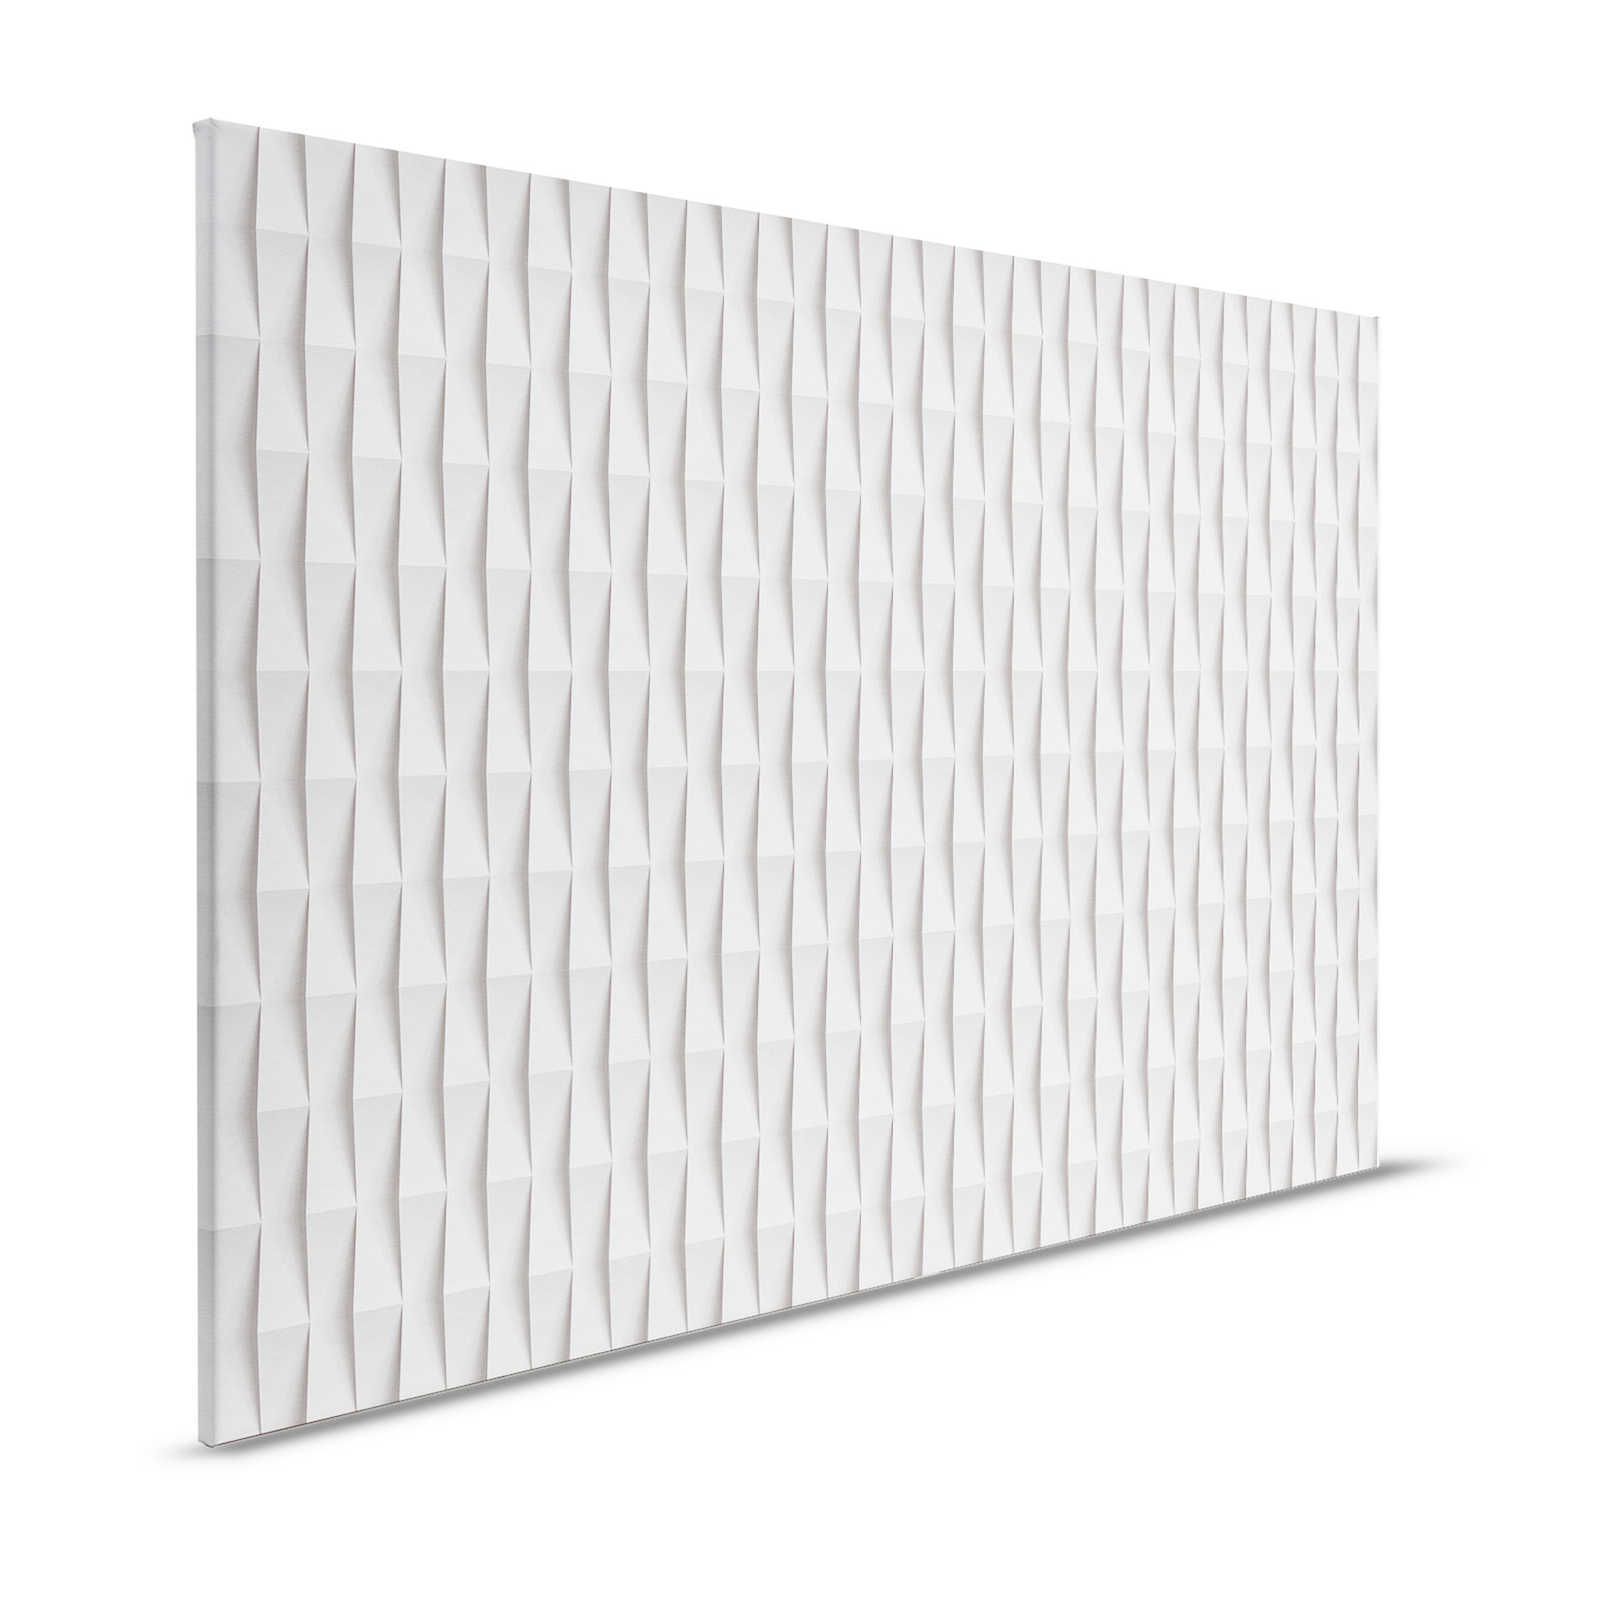 Paper House 2 - 3D toile papier pliage design avec ombres portées - 1,20 m x 0,80 m
